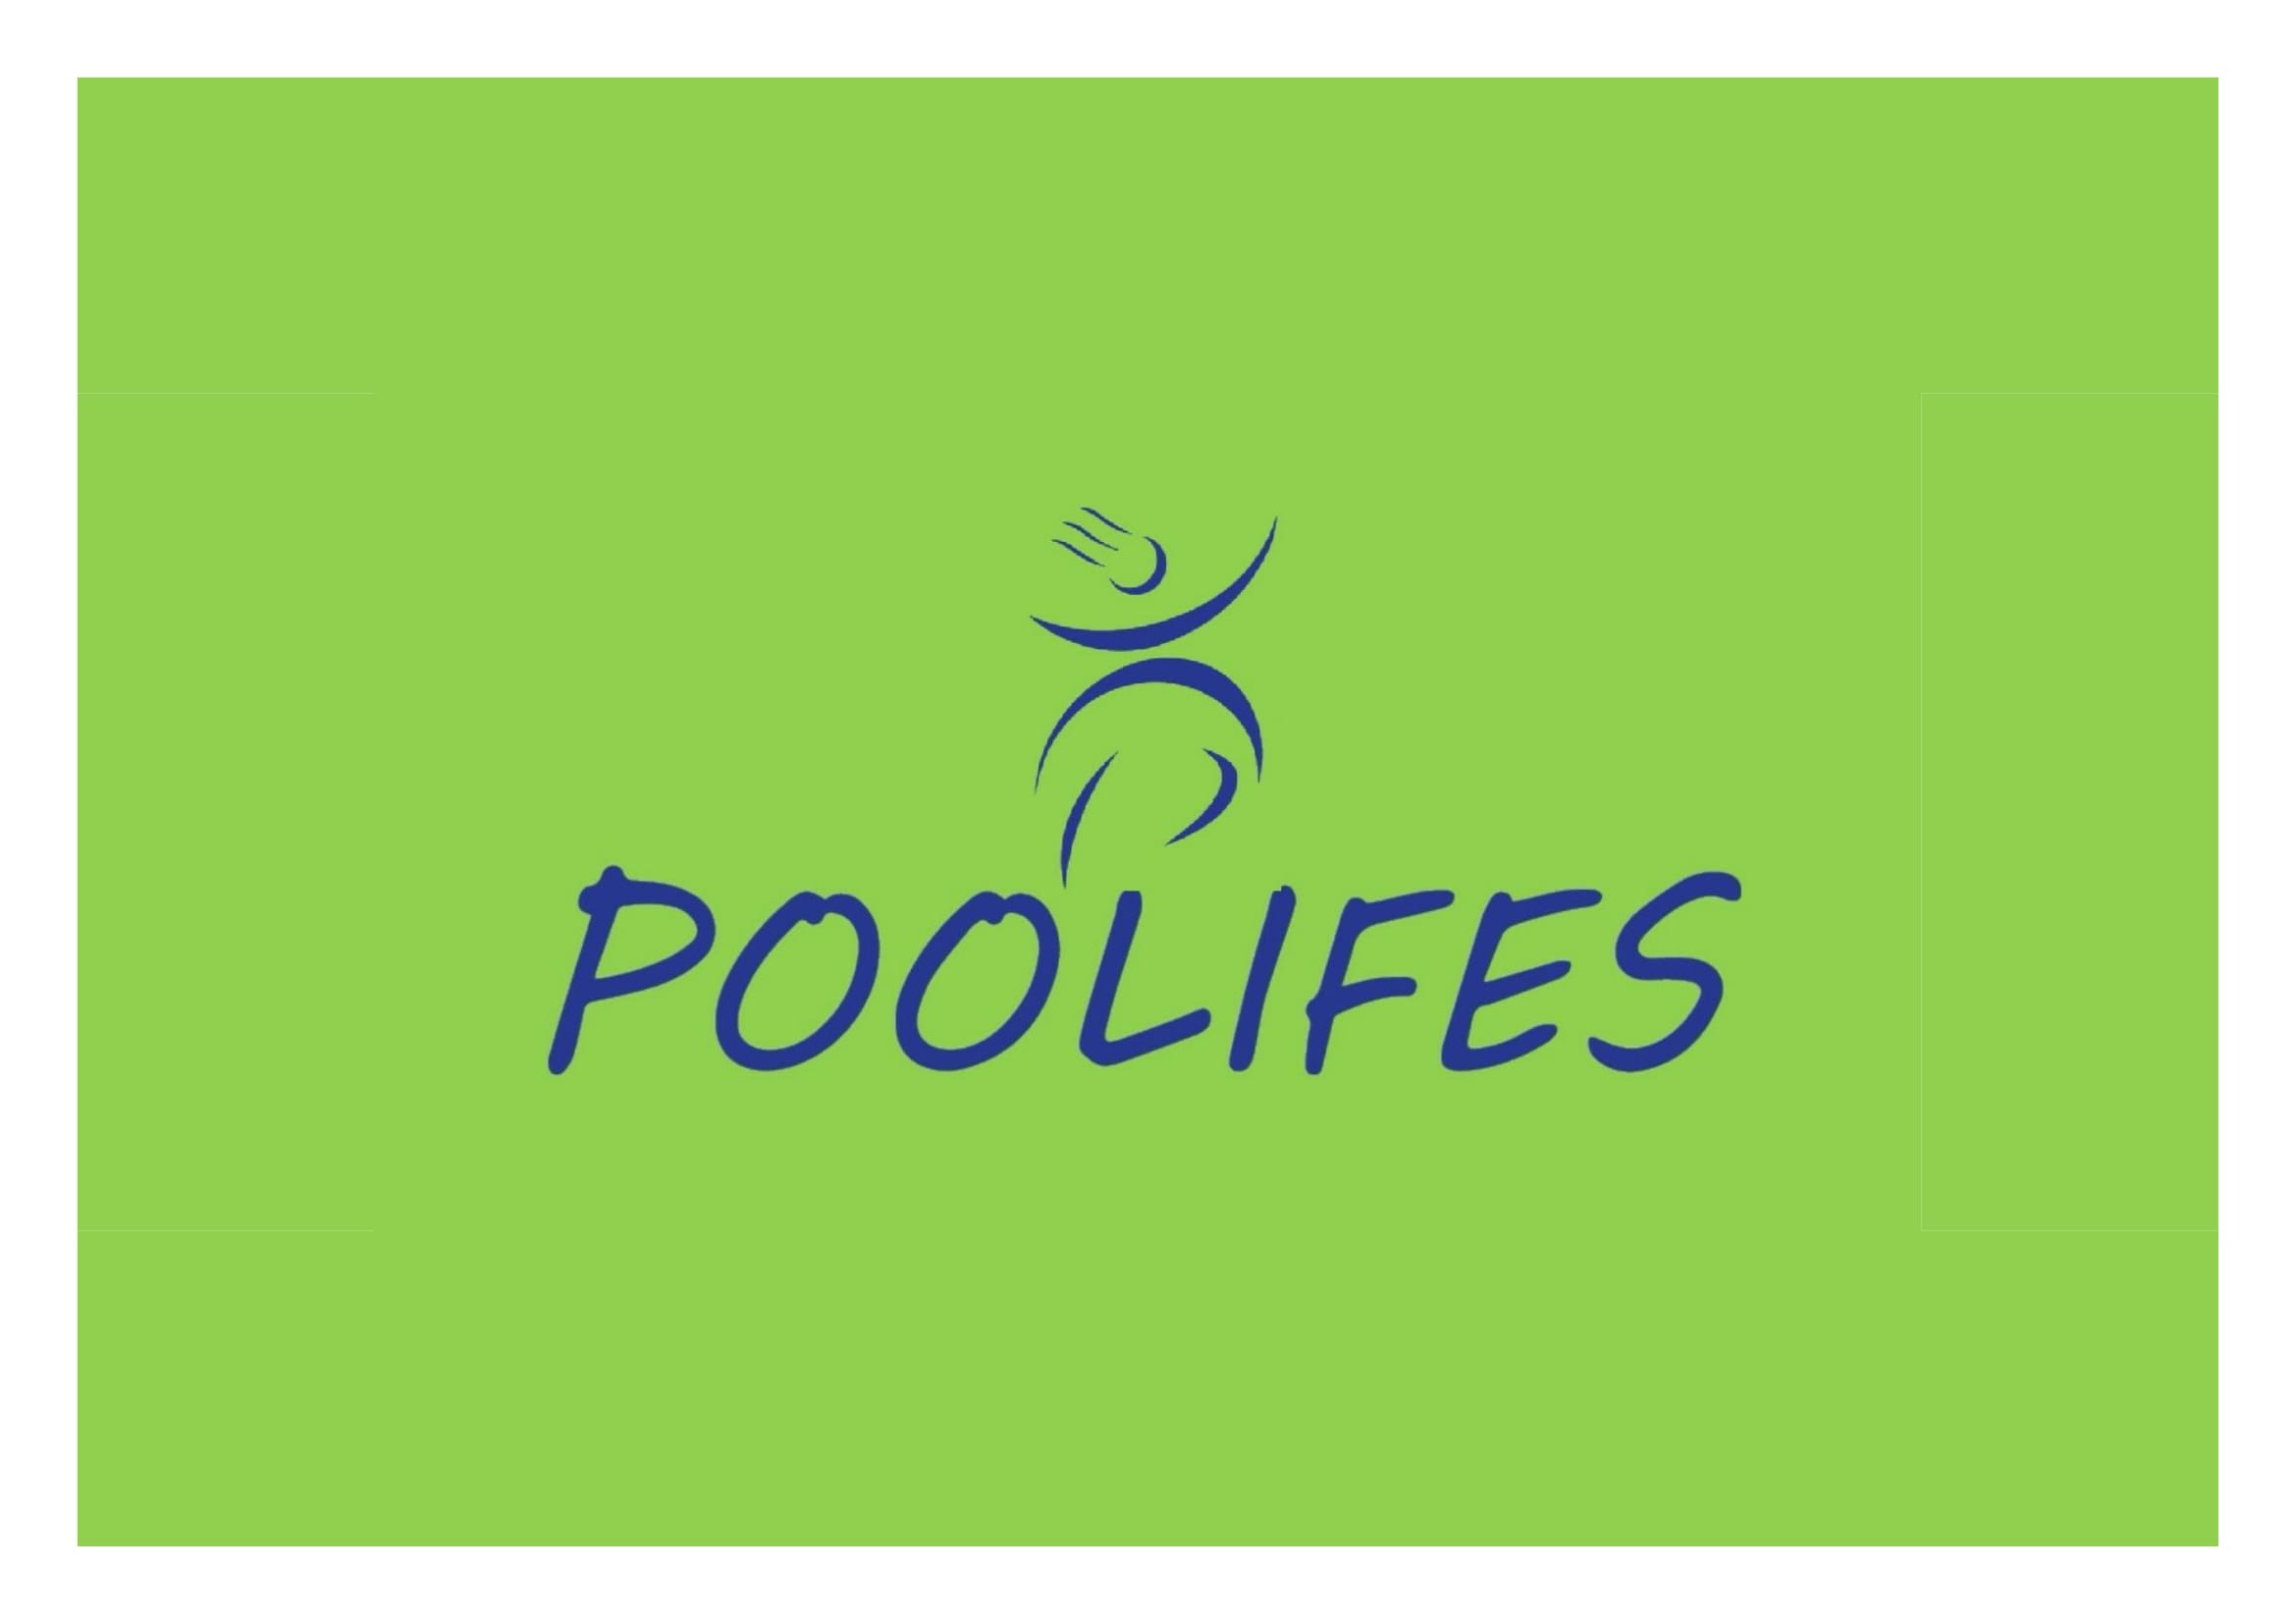 Poolifes